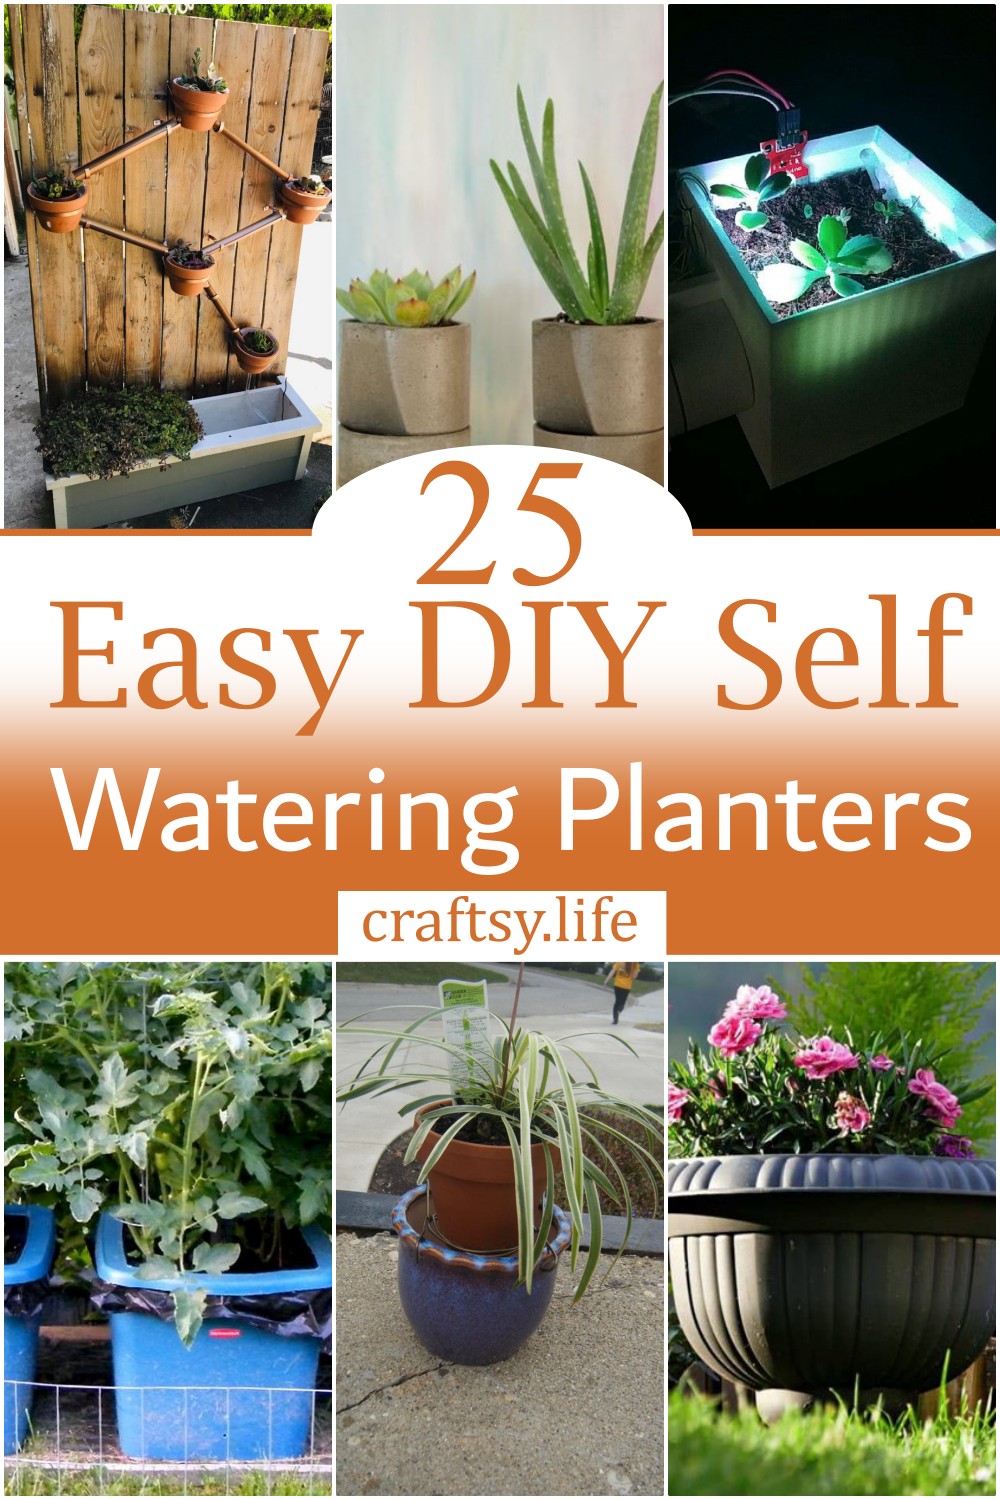 Easy DIY Self Watering Planters